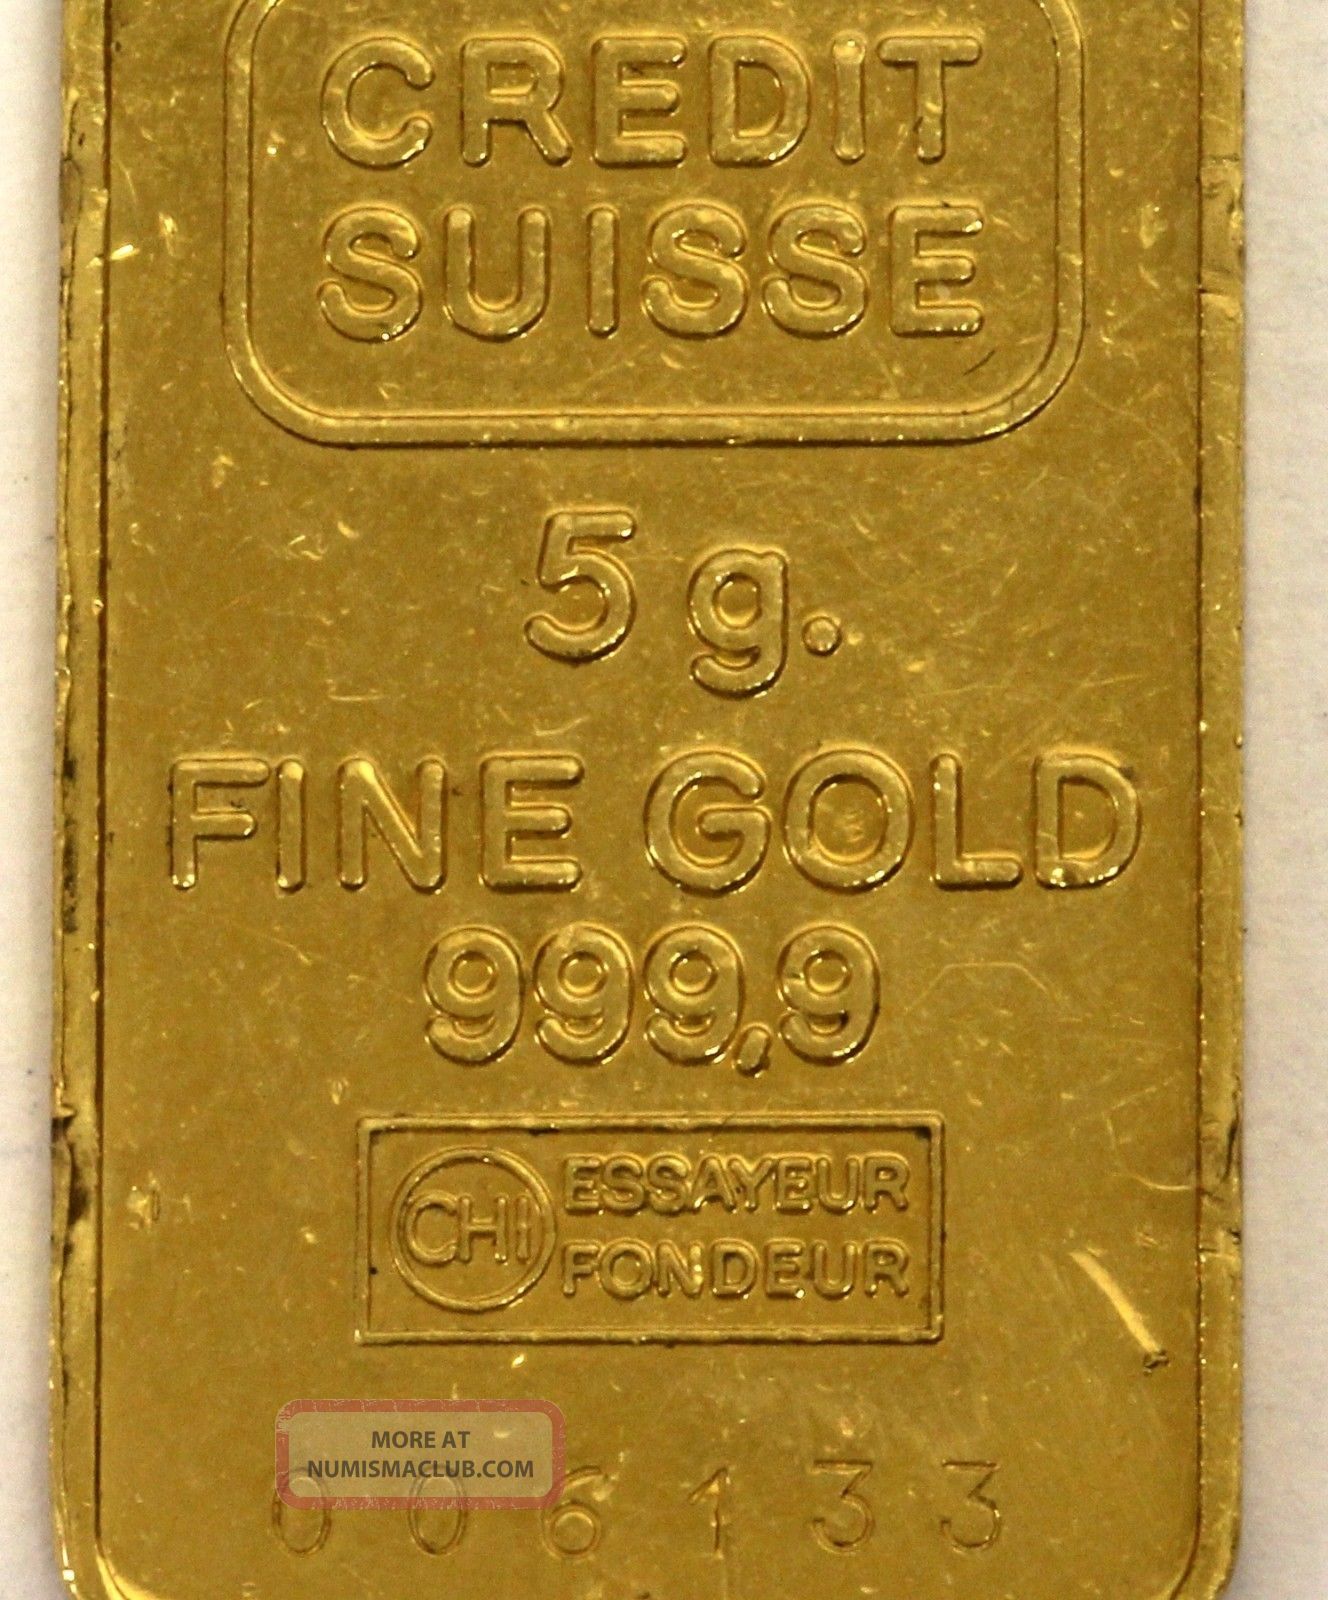 5g credit suisse gold bar